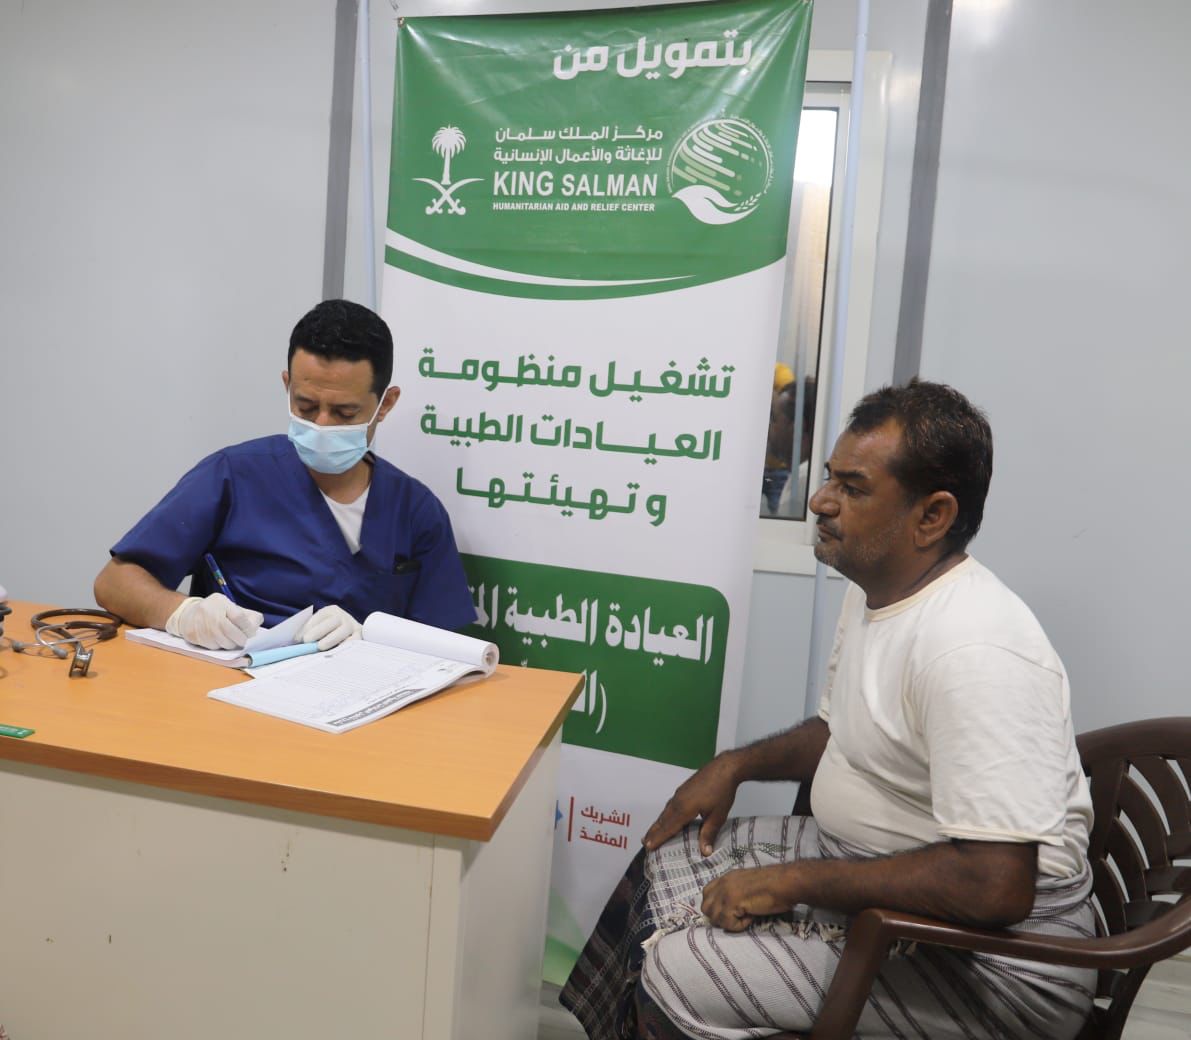 حجة.. 1,012 مستفيدًا من خدمات العيادة الطبية المتنقلة لمركز الملك سلمان للإغاثة خلال أسبوع